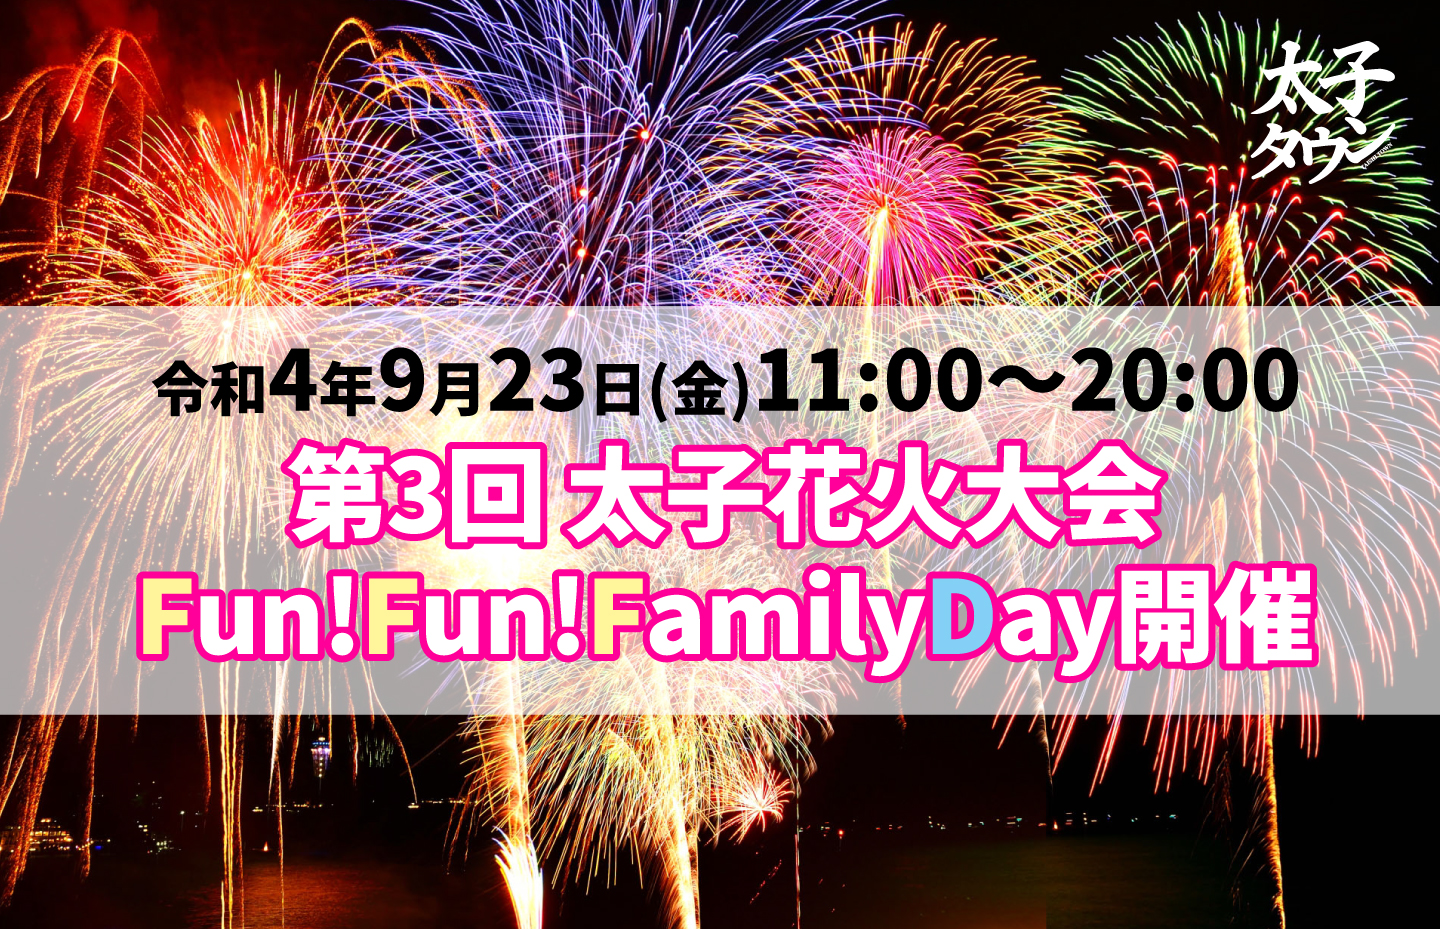 「第3回 太子花火大会 in Fun! Fun! Family Day」が開催されます